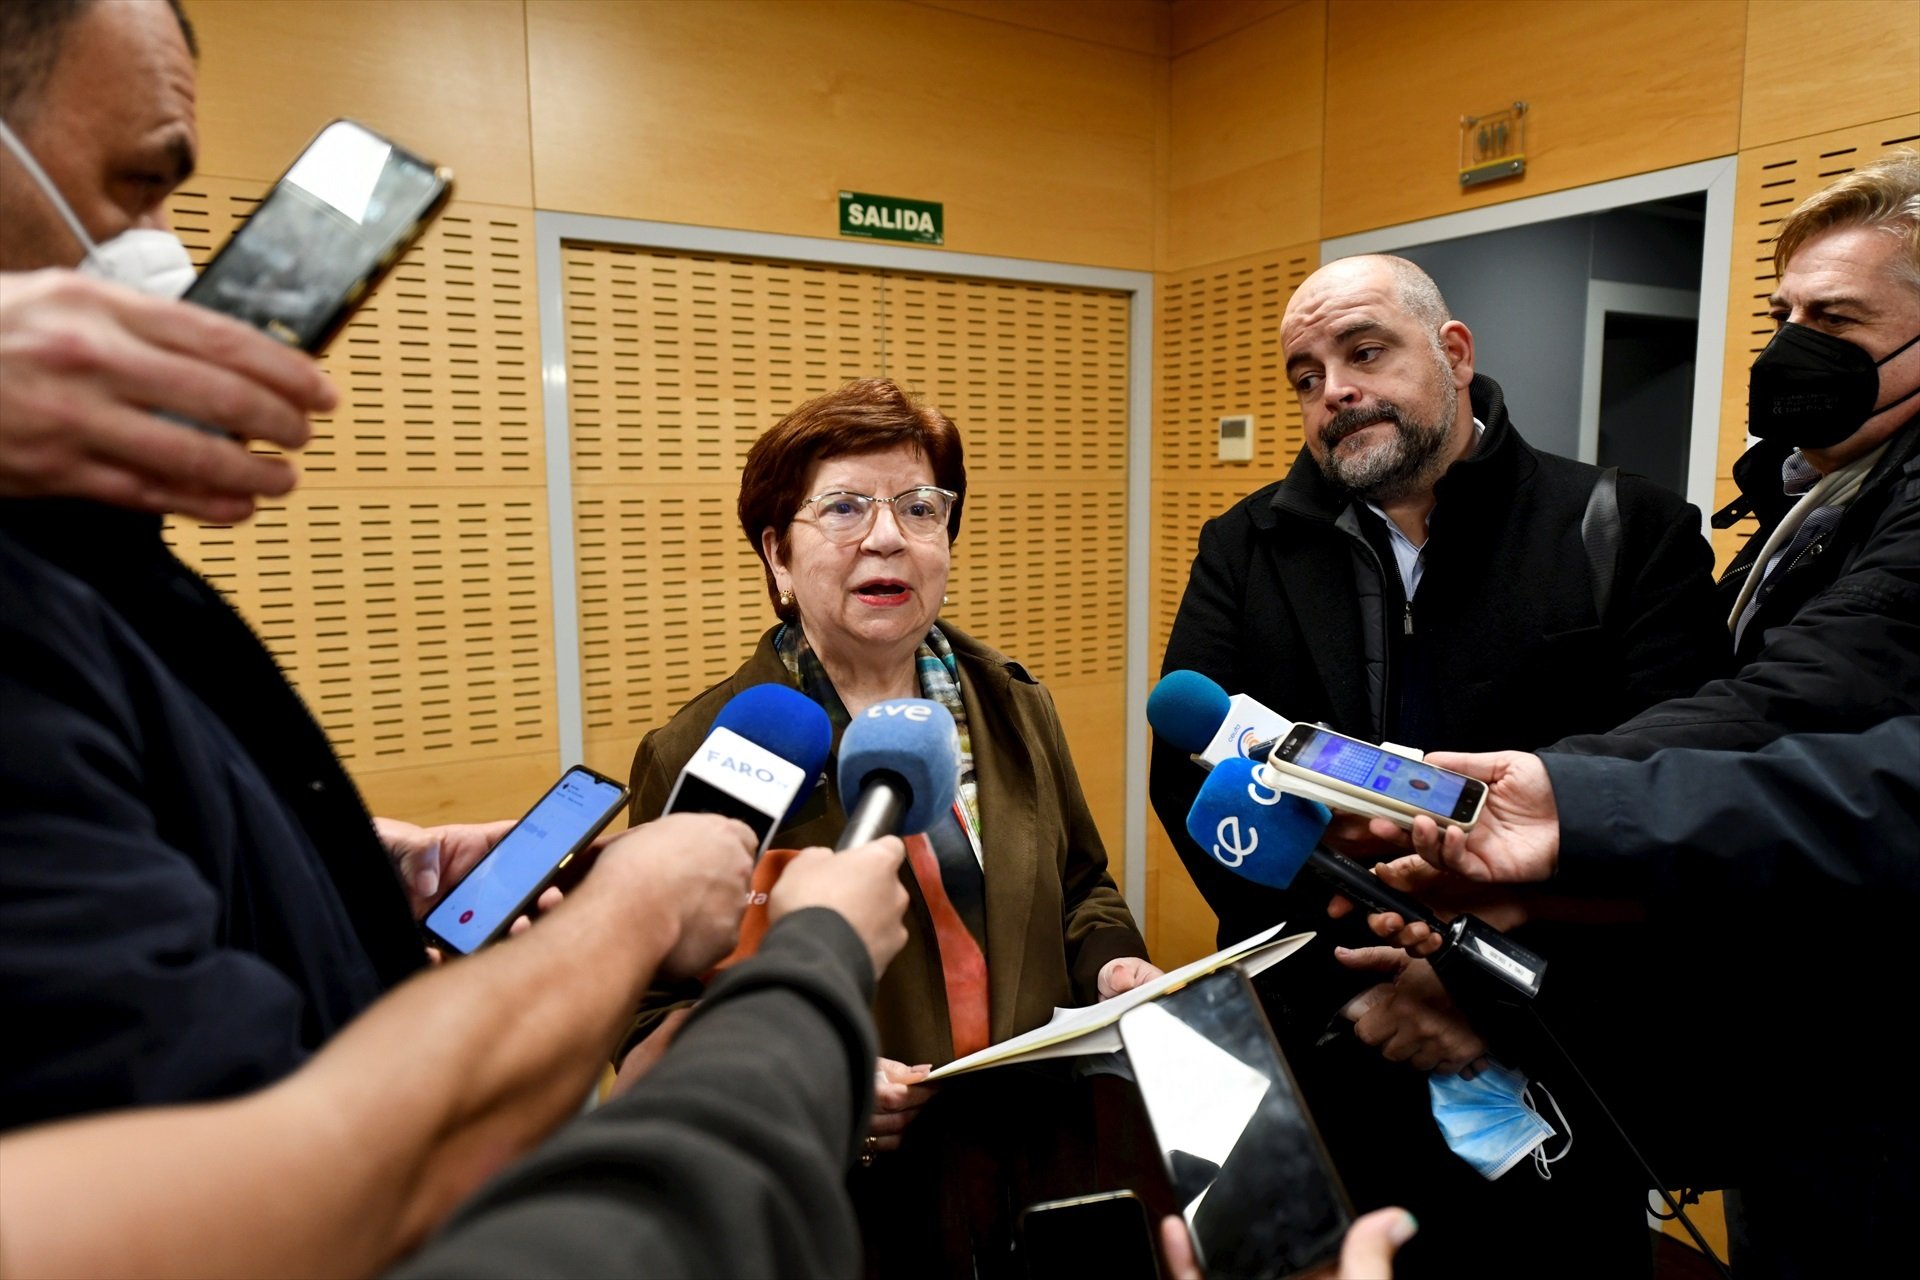 A judici dues autoritats polítiques de Ceuta pel retorn de 55 menors immigrants no acompanyats